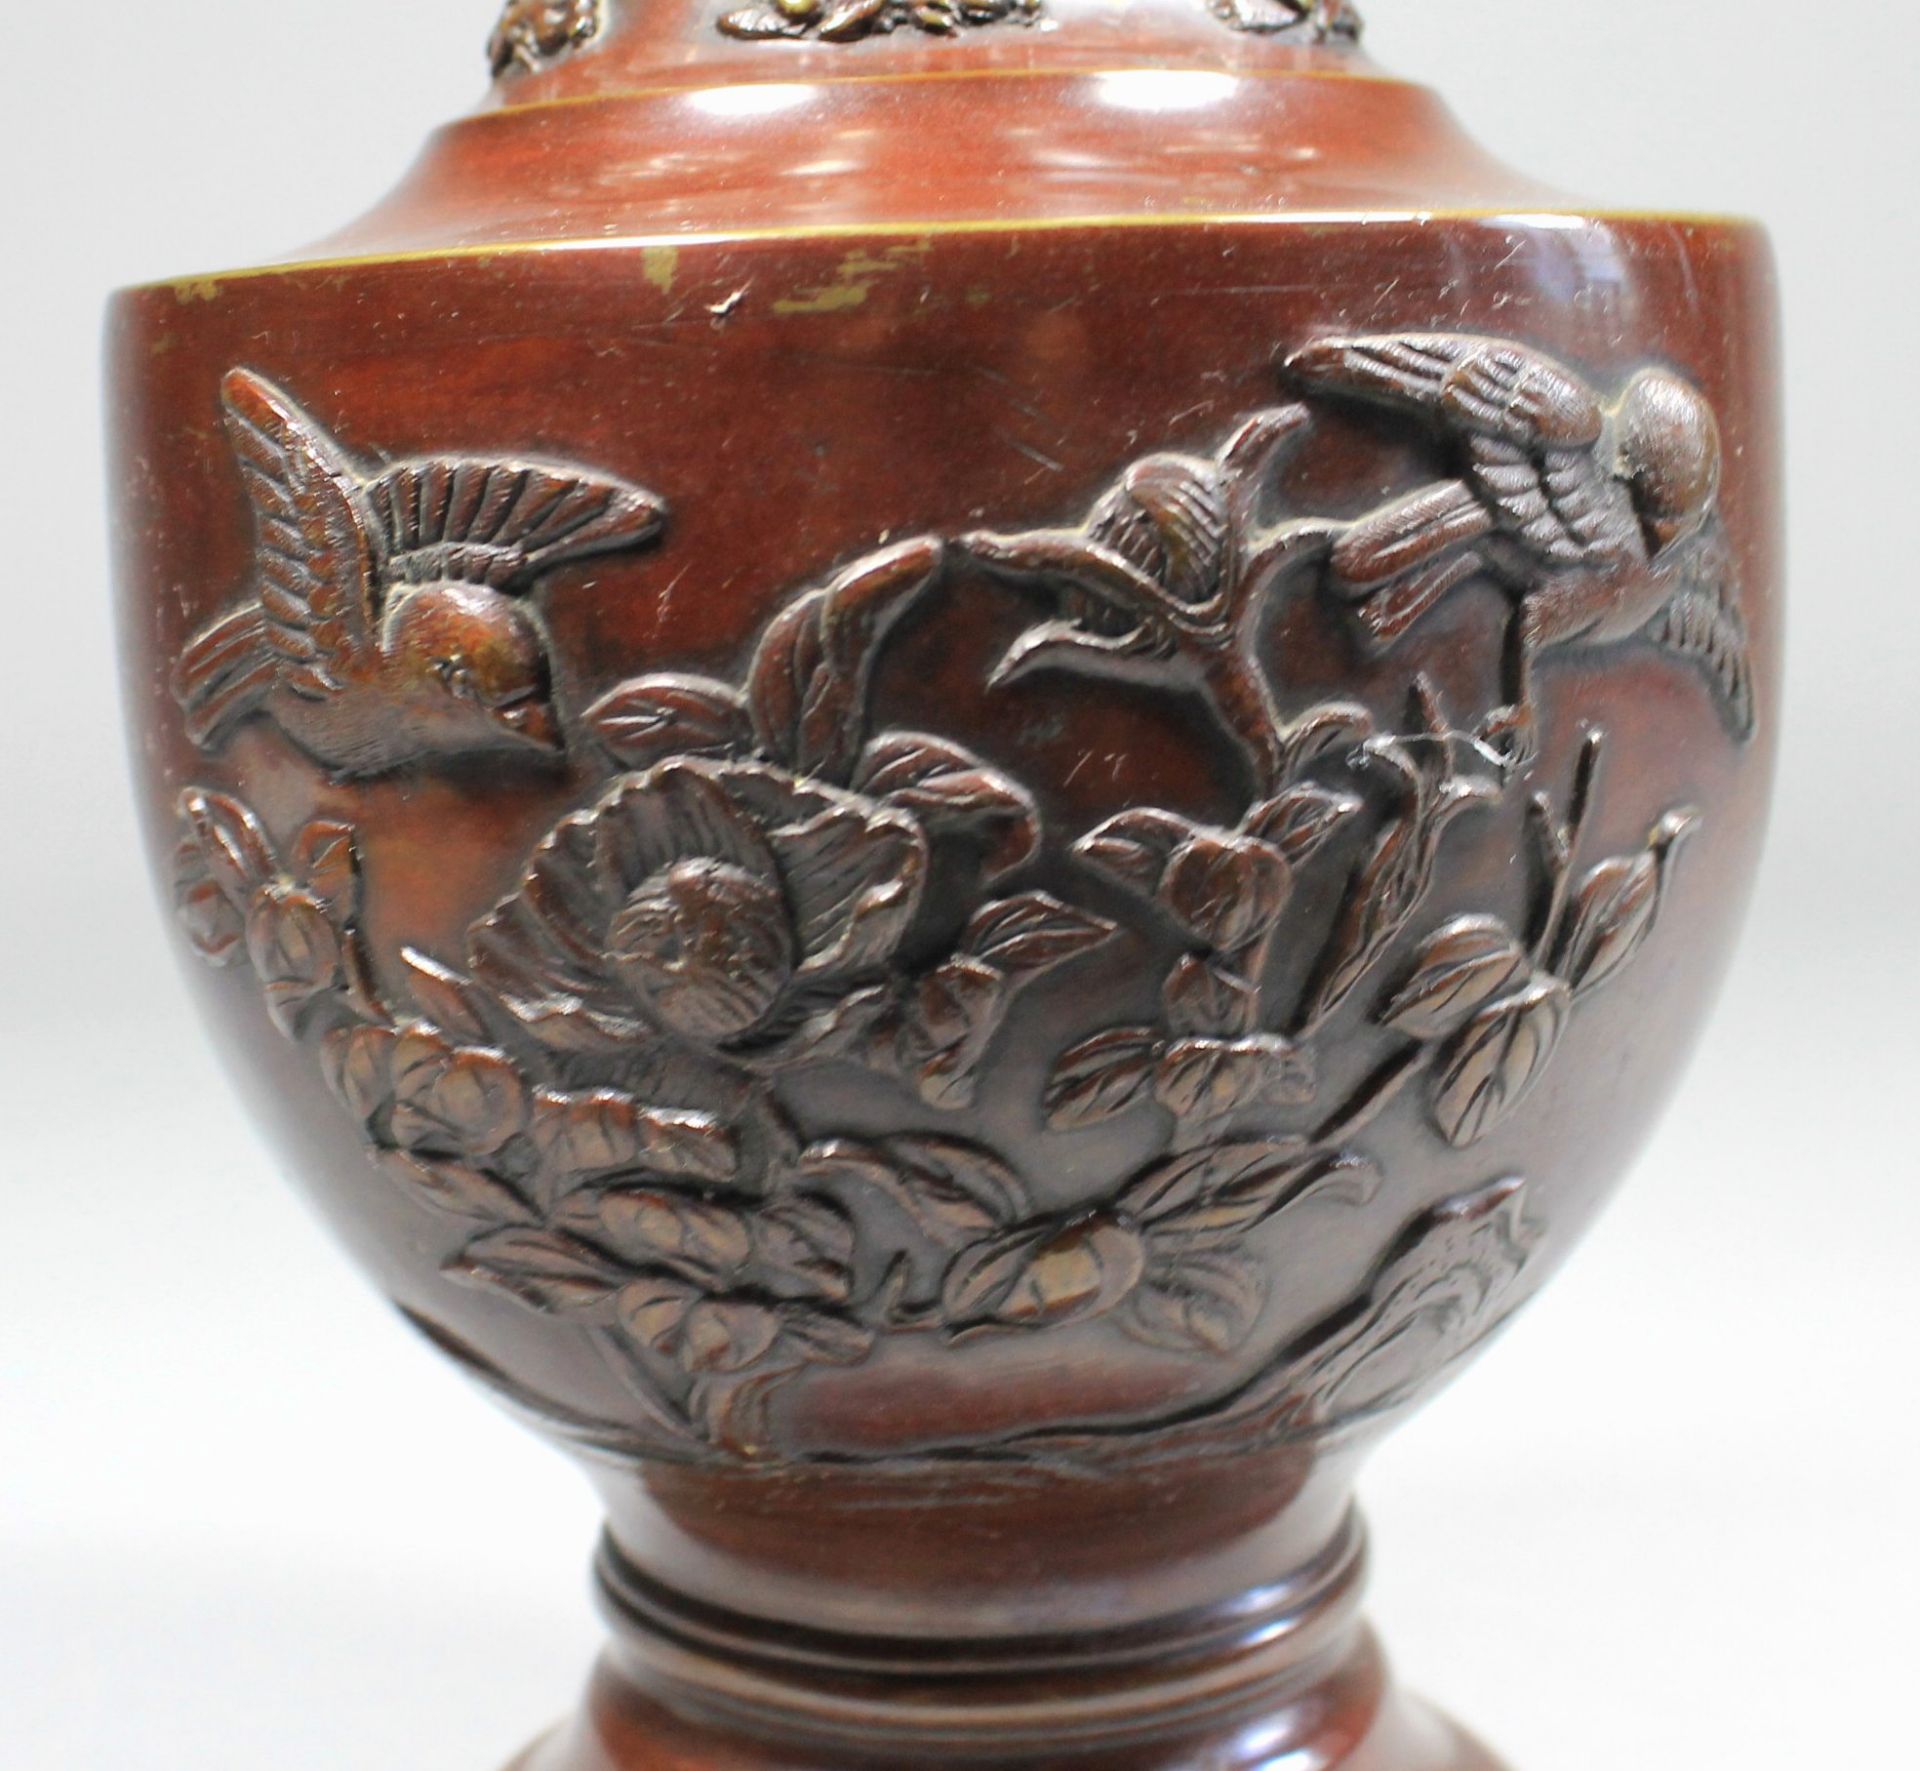 1 Vase Messing, bronziert, mit aufgelegtem asiatischen Reliefdekor, am Hals 2 stilisierte und - Bild 2 aus 4